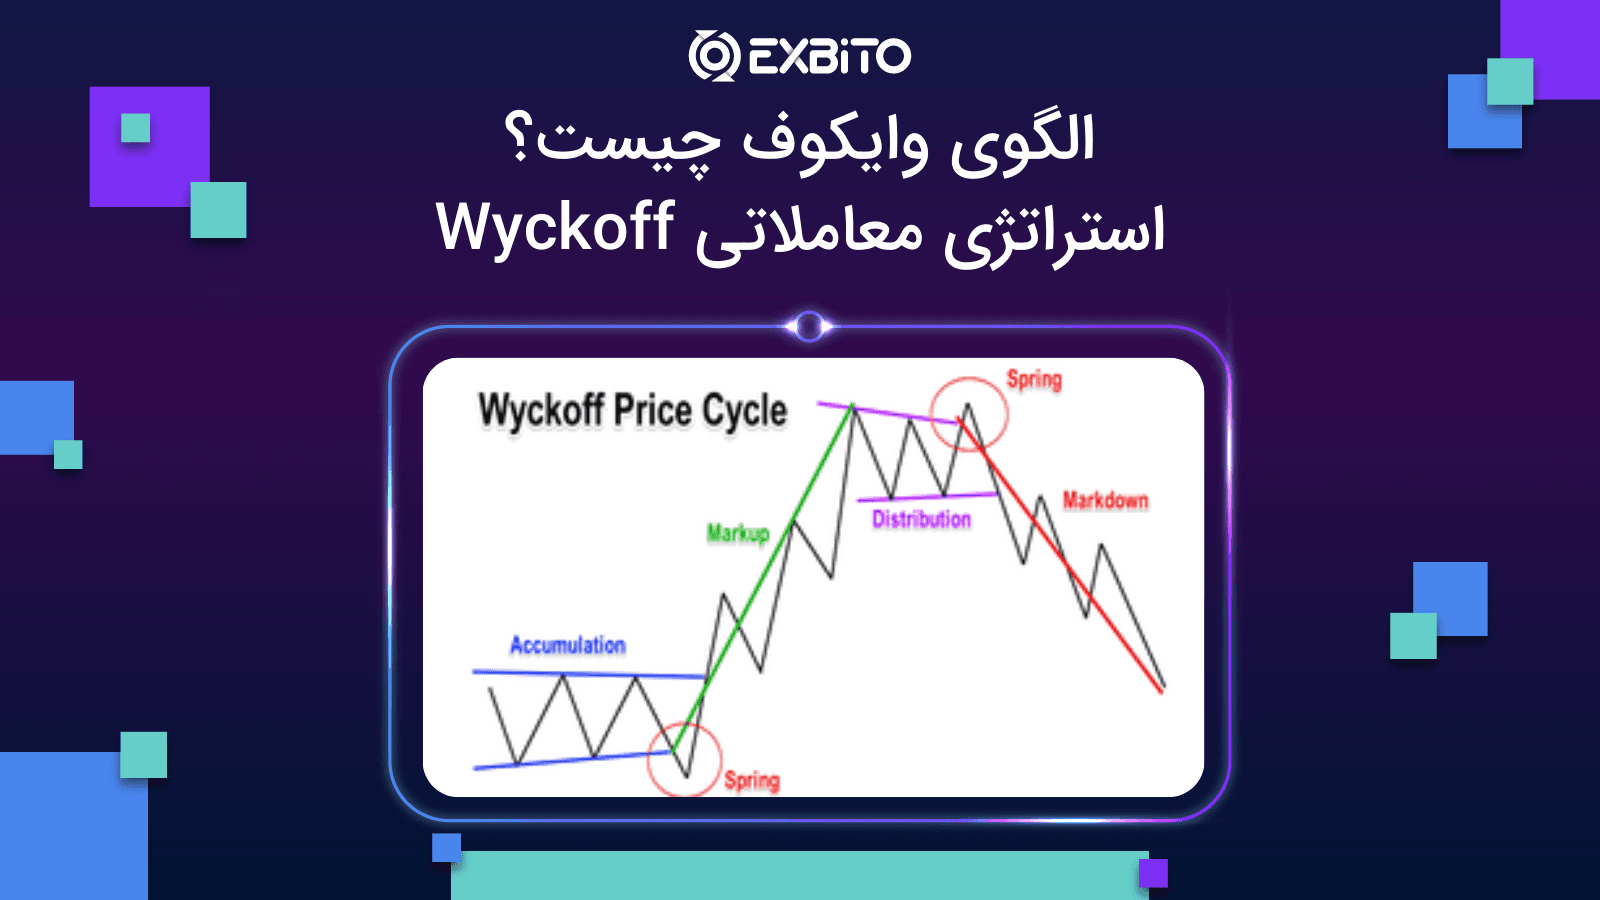 الگوی وایکوف چیست؟|استراتژی معاملاتی Wyckoff